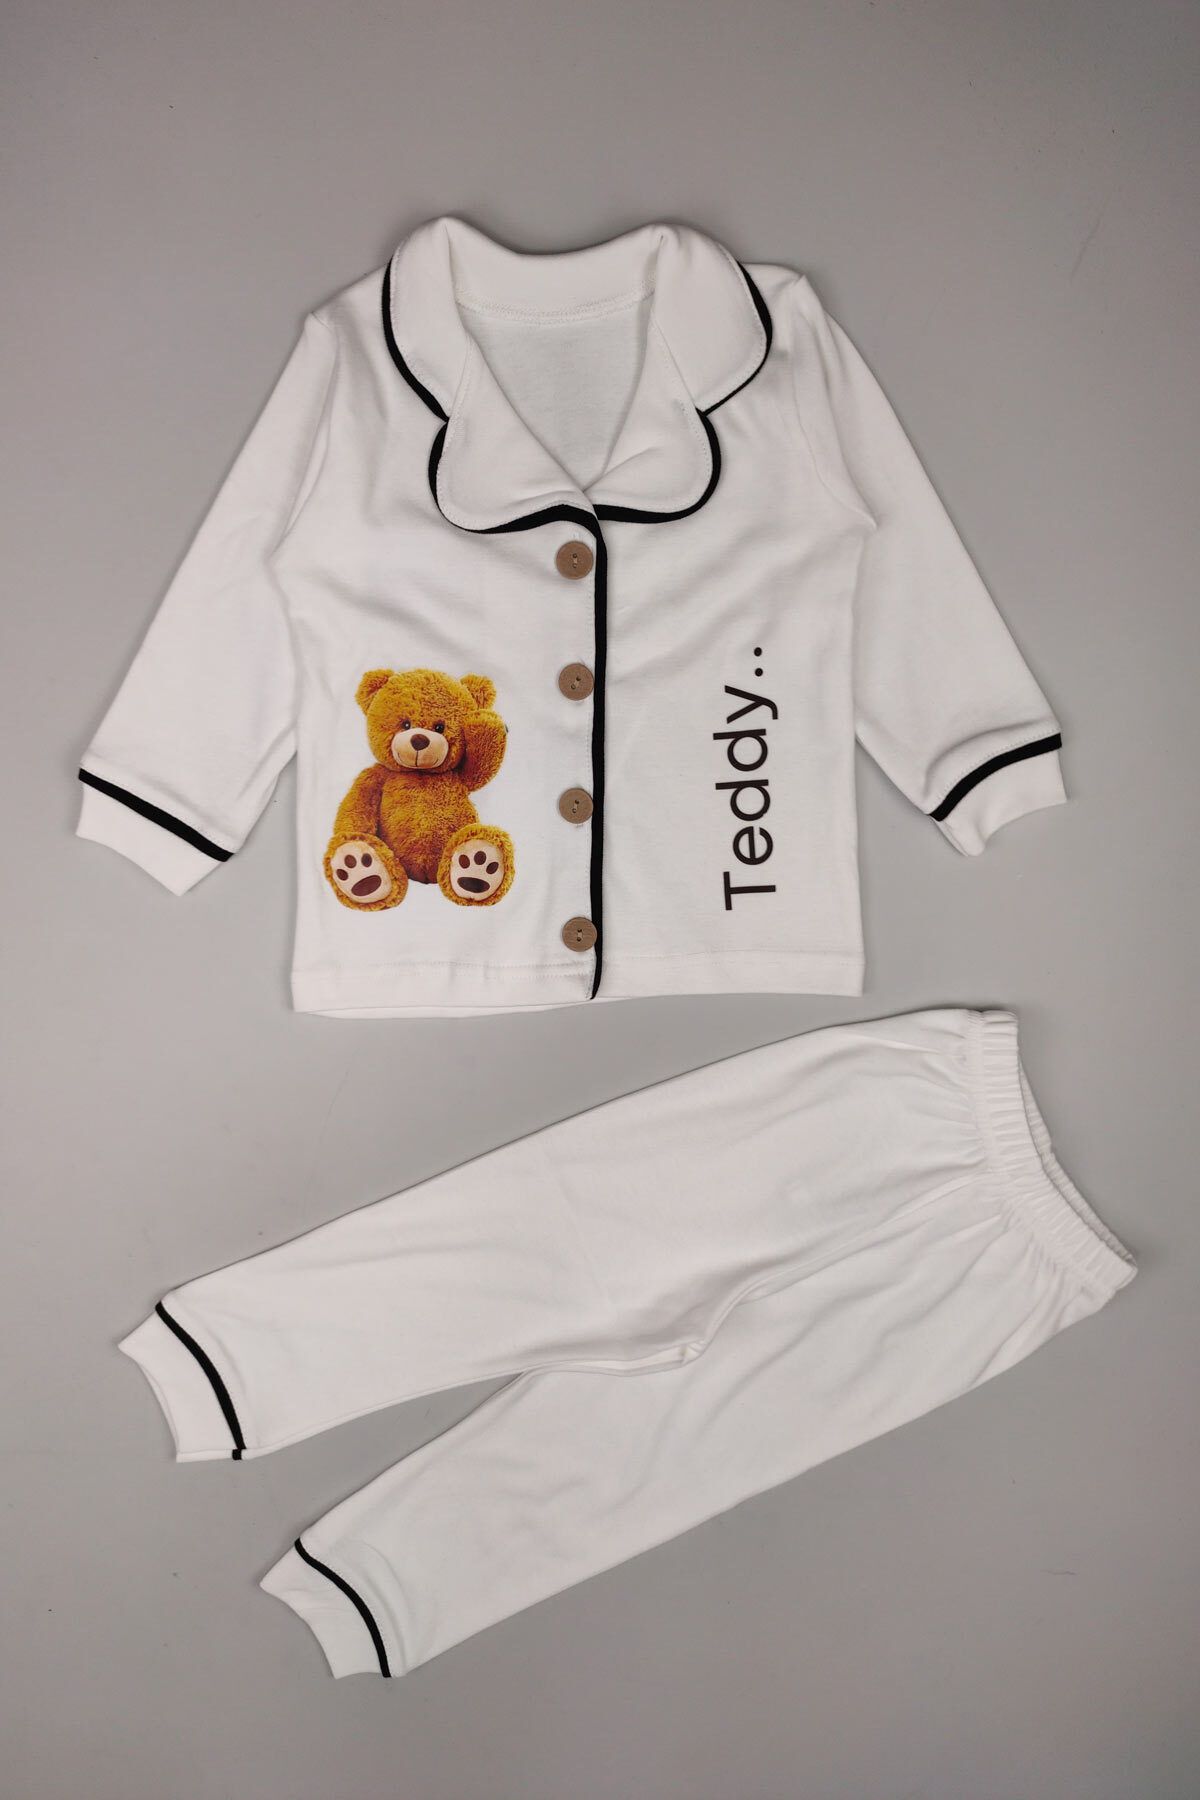 Peki Bebek 5al4öde Çocuk Pamuklu Teddy Bear Ahsap Ceket Yaka Pijama Takimi 30derece Üstü Yikanmaz 15209